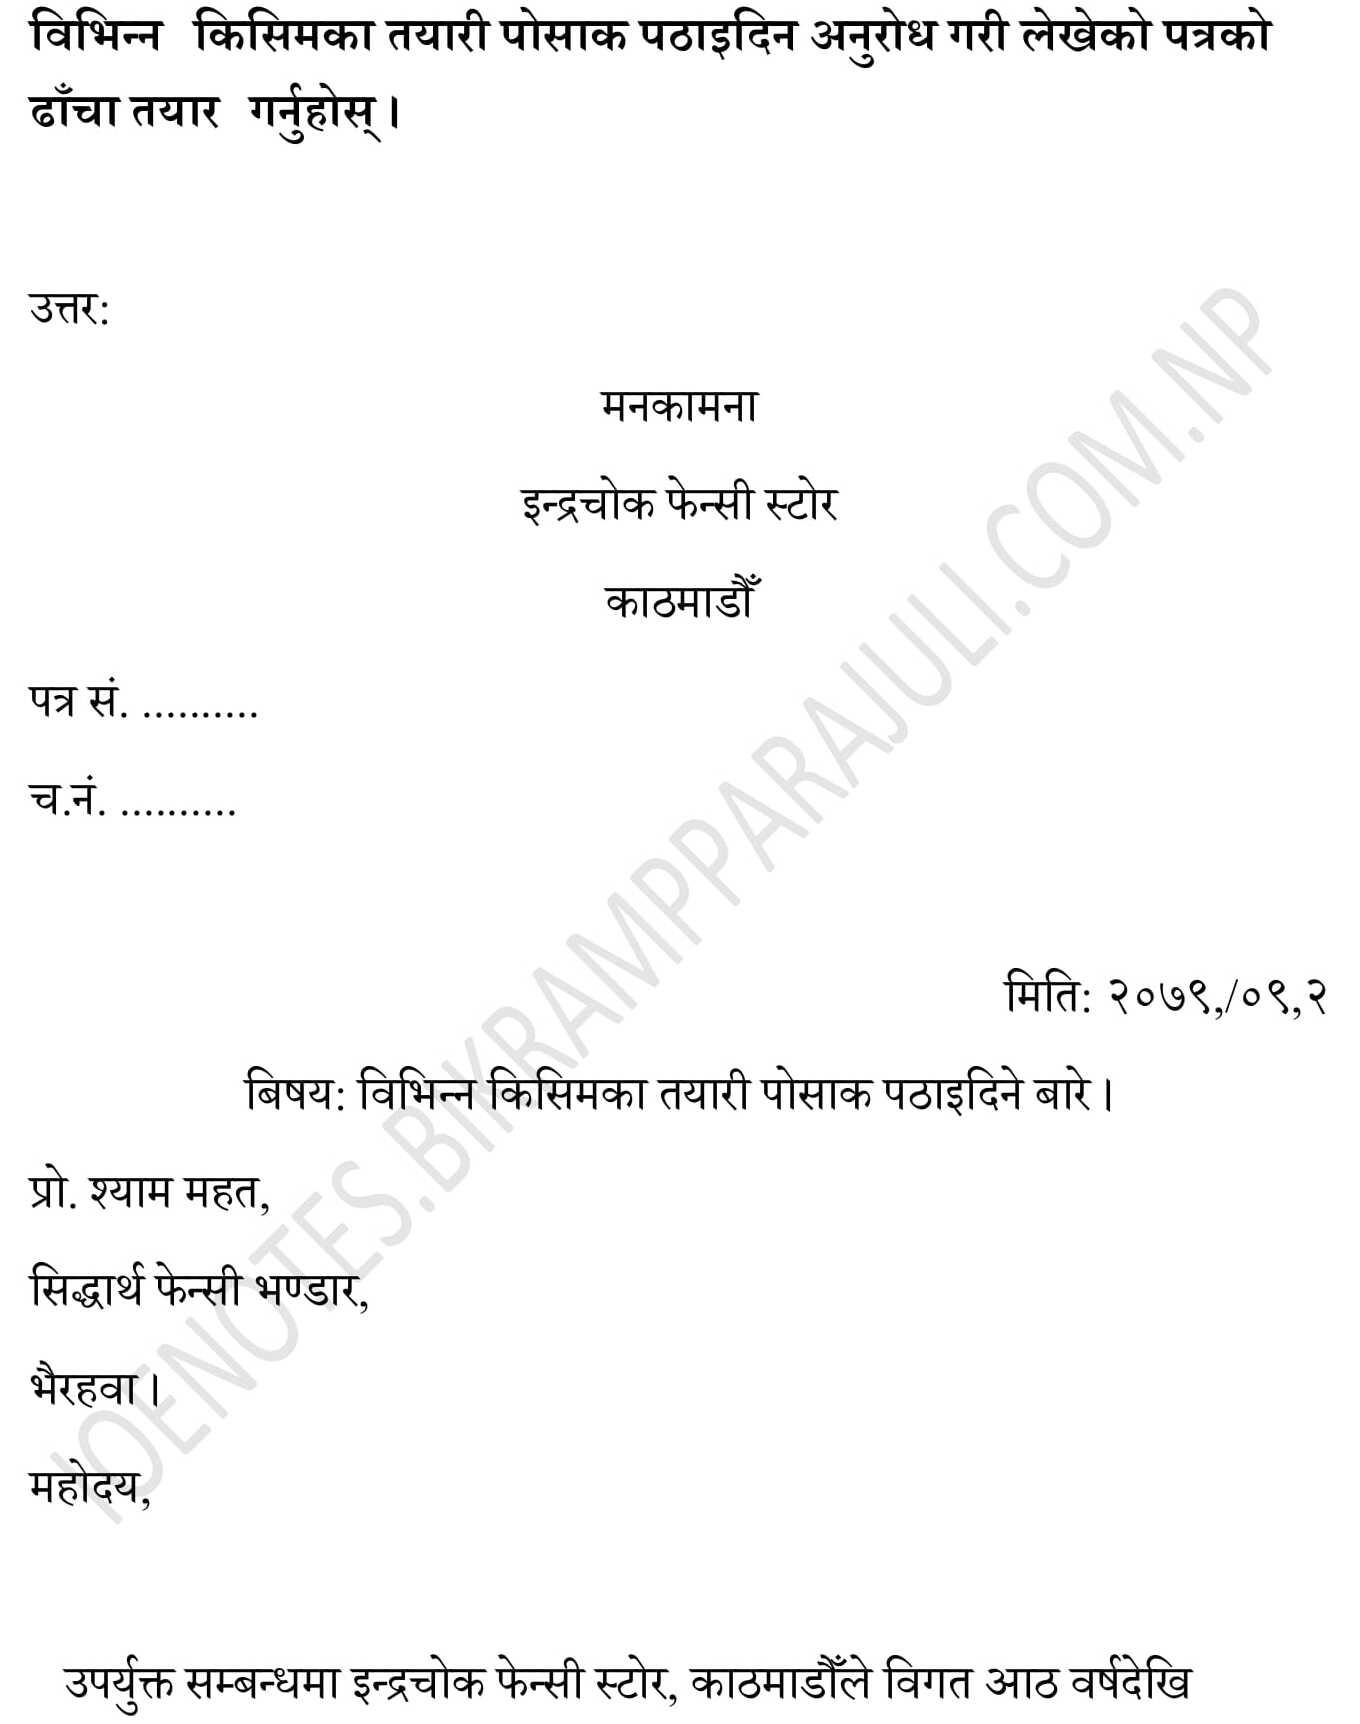 Nepali letter sample